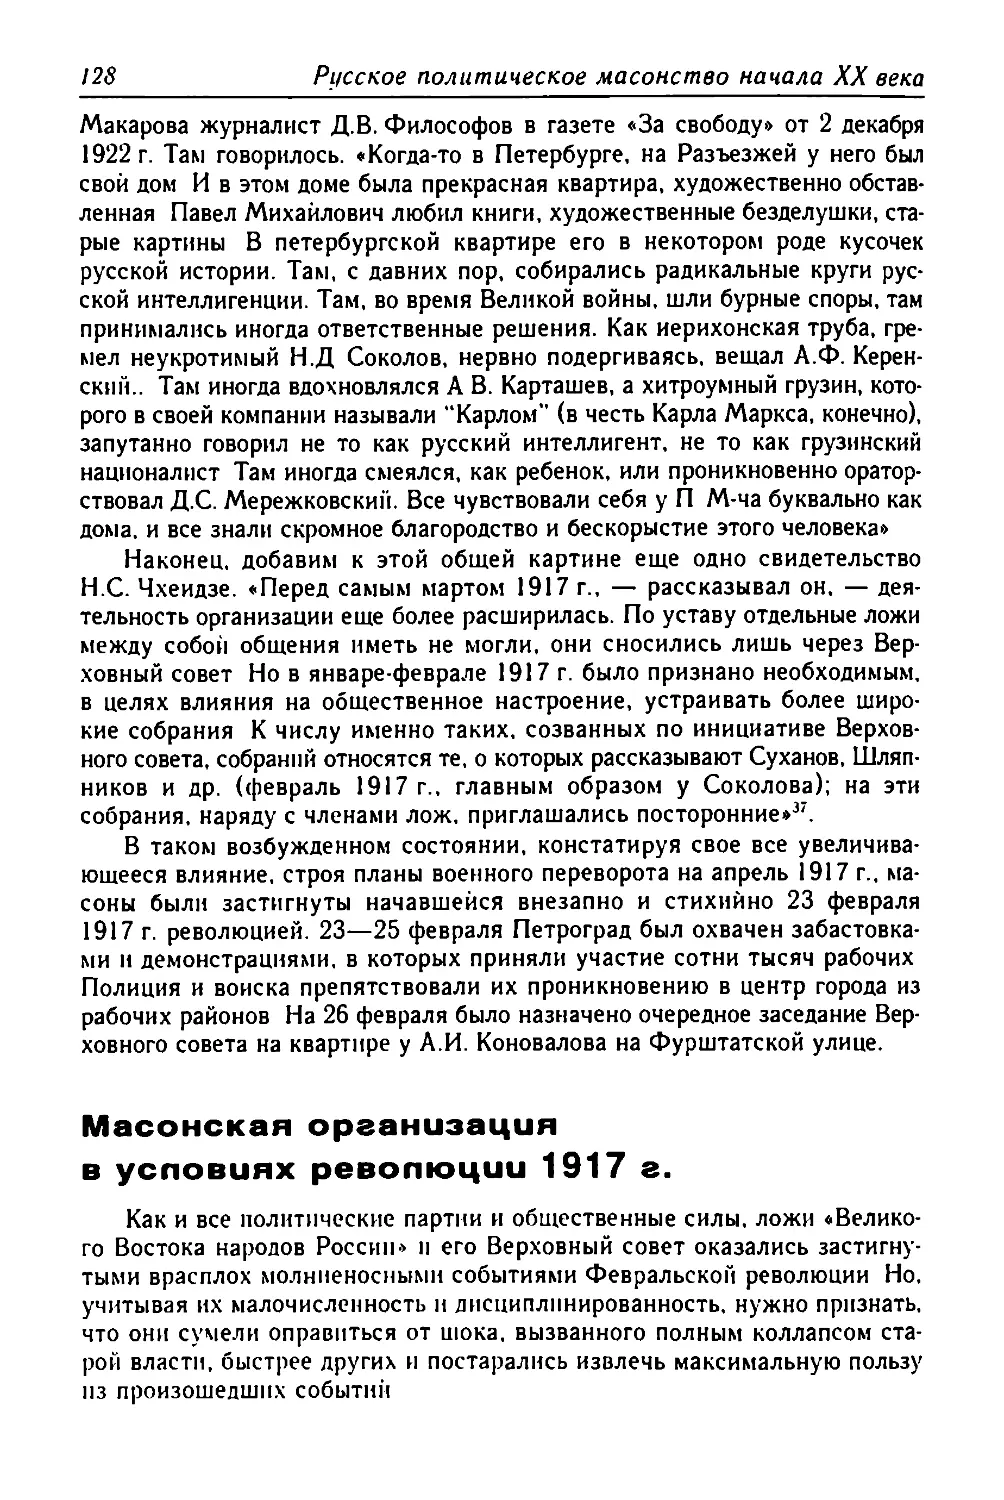 Масонская организация в условиях революции 1917 г.